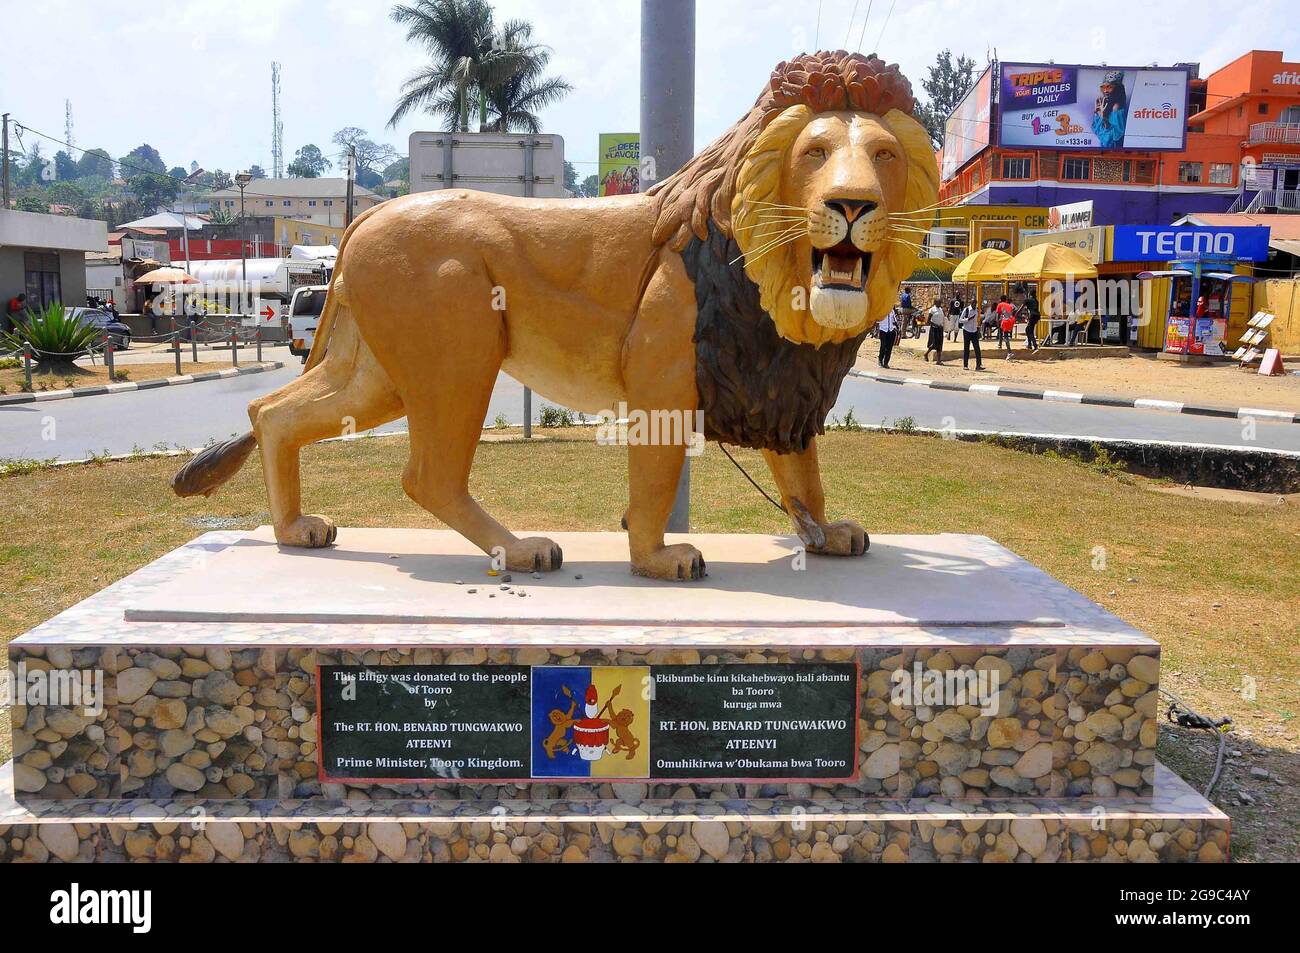 Un monument d'un lion au coeur du Royaume de Tooro. Rukirabasaija Oyo Nyimba Kabamba Iguru Rukidi IV, roi Oyo, est le régnant Omukama de Toro, en Ouganda. Oyo devient Omukama en 1994 après la mort de son père. Toro City, ouest de l'Ouganda. Banque D'Images